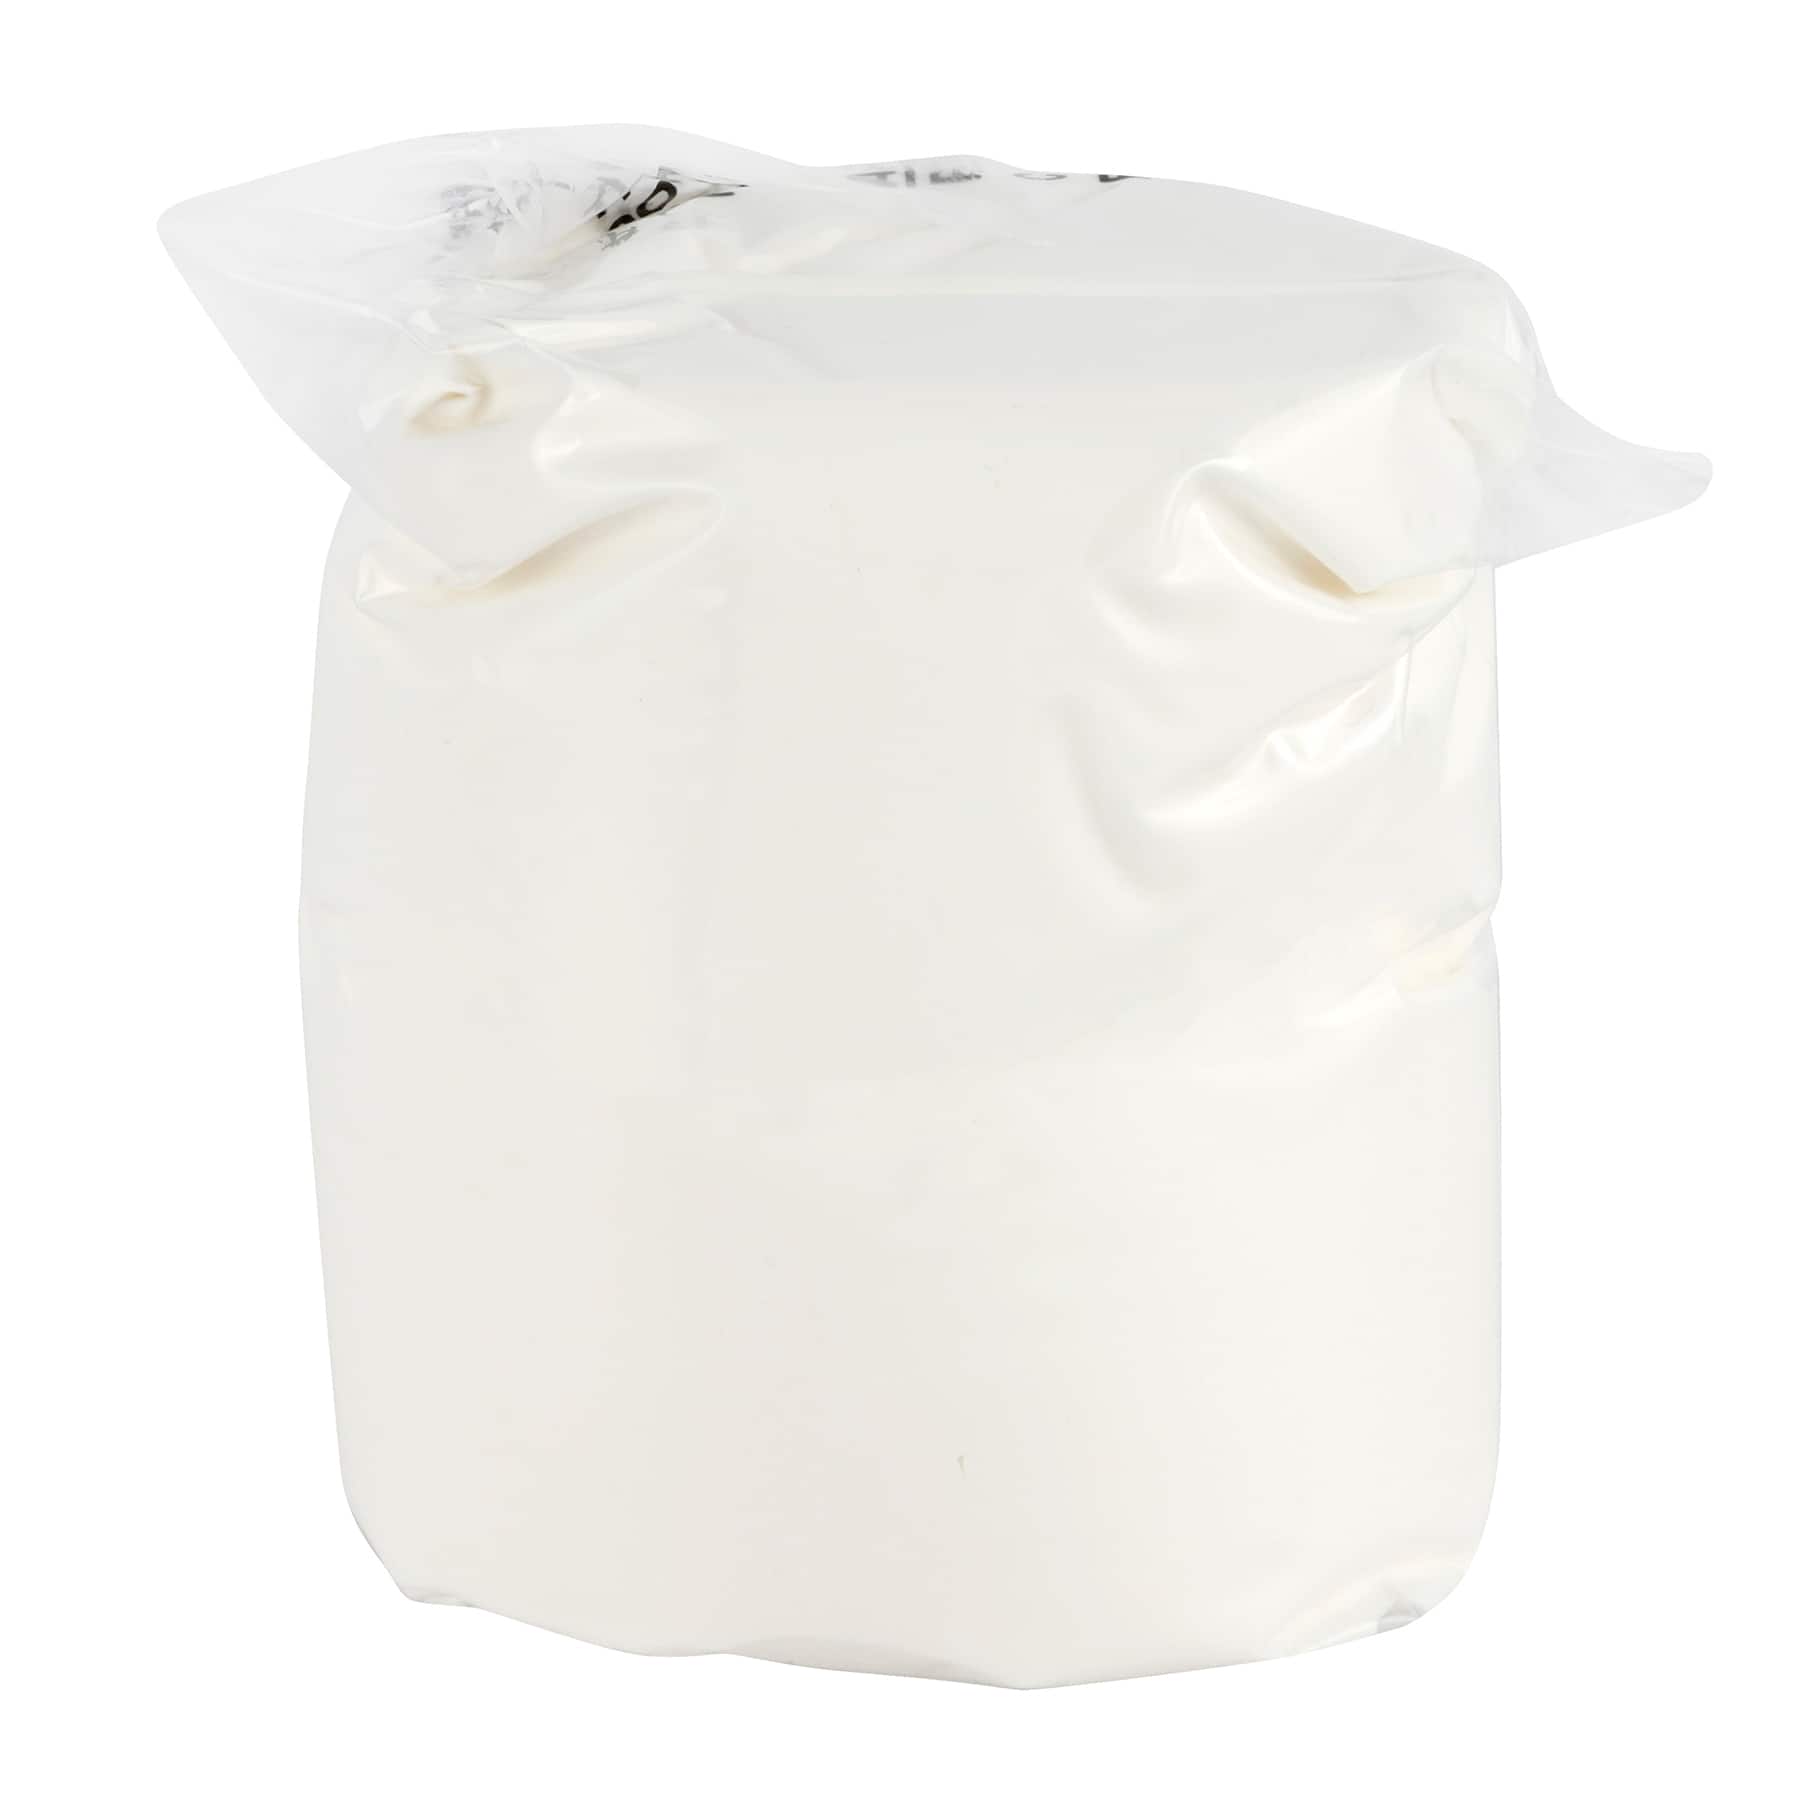 Modeling Foam by Make Market, Size: 9.88, White